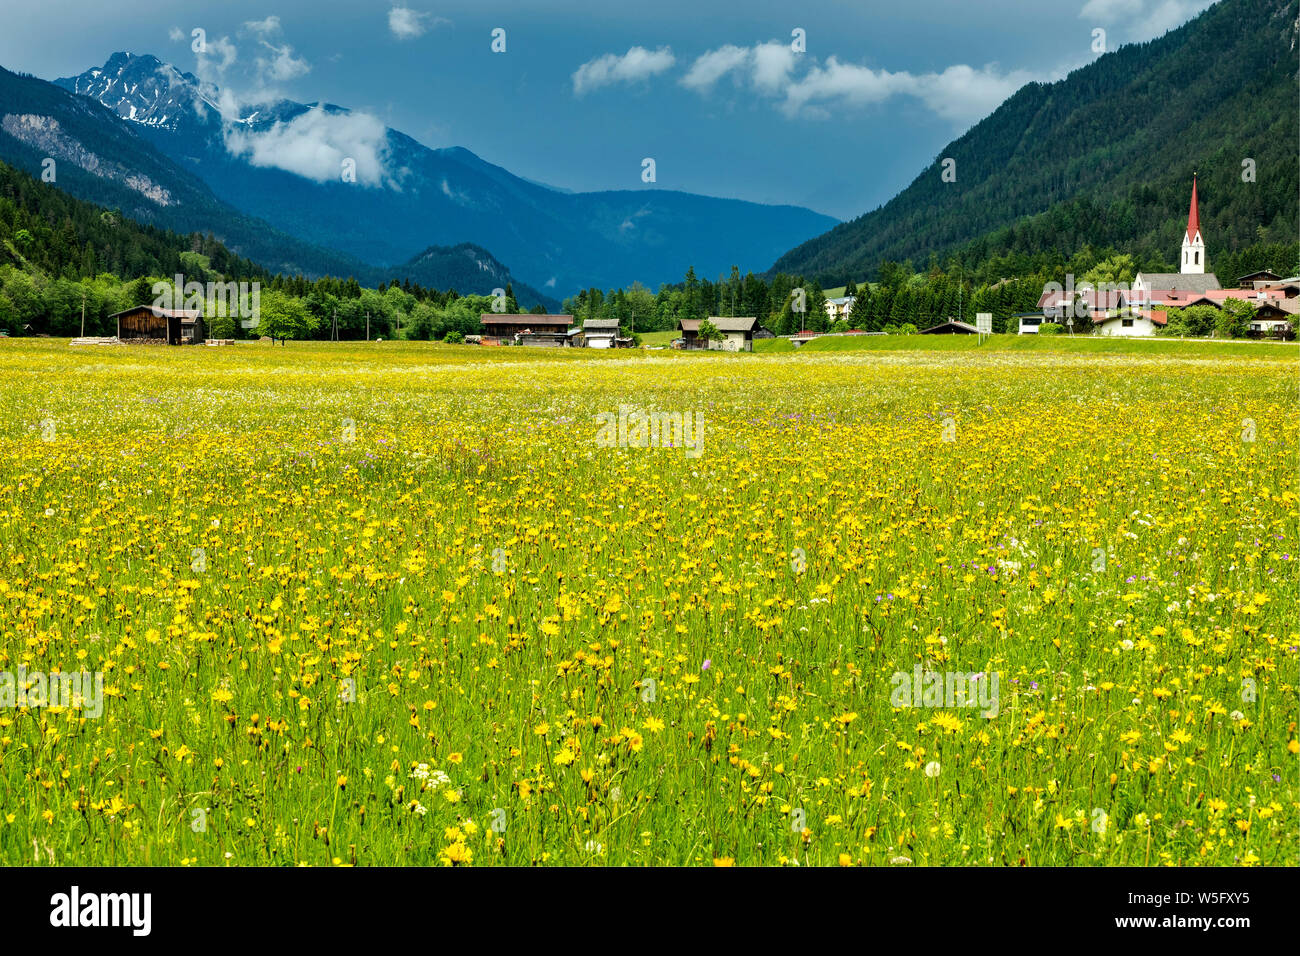 Austria, Tyrol, Naturpark Tiroler Lech, Lechtal, pastureland, Elmen village Stock Photo